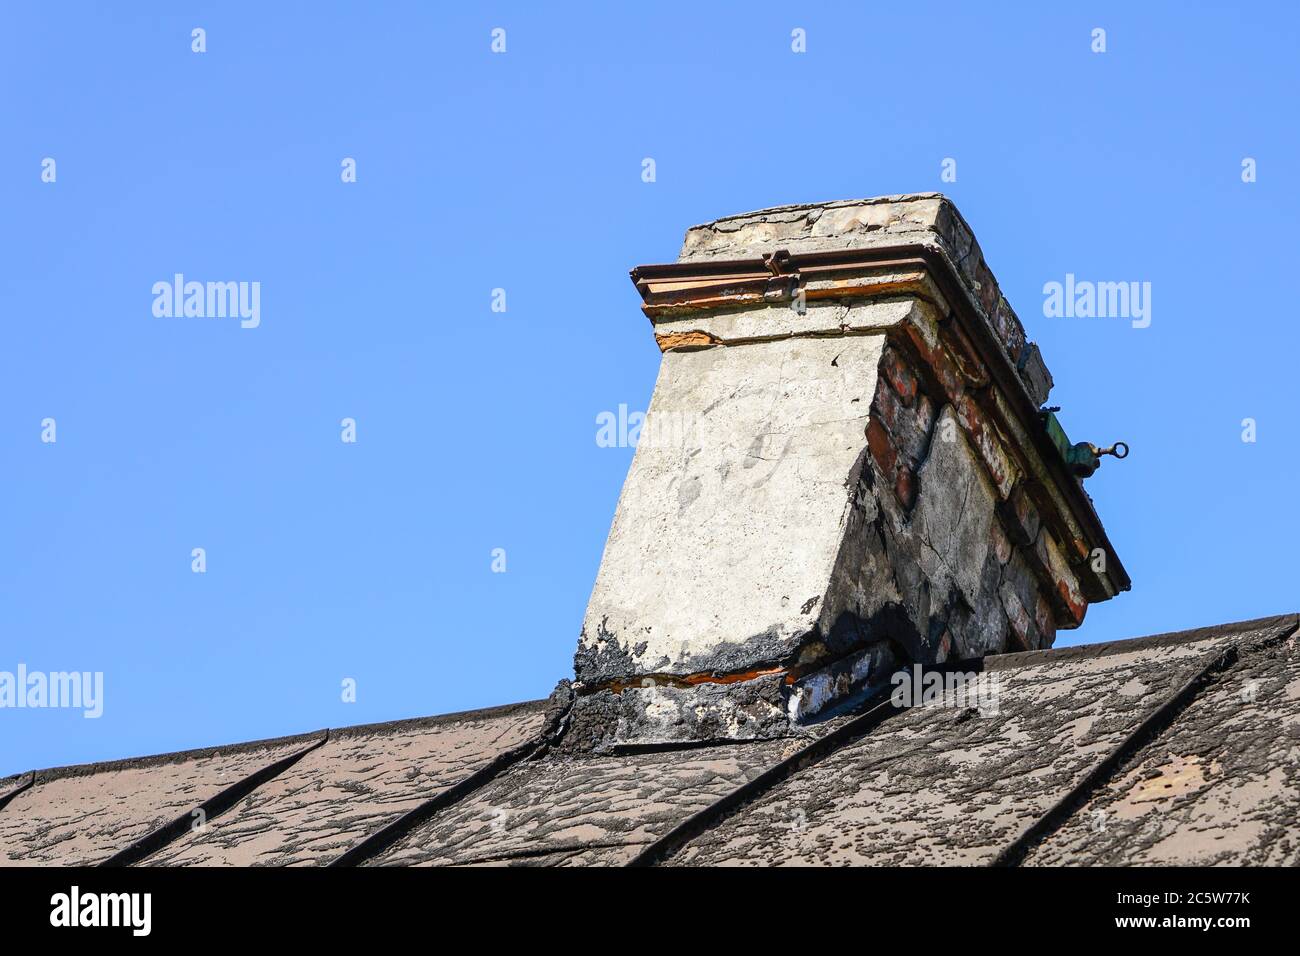 damaged brick chimney, cracked and dangerously skewed Stock Photo